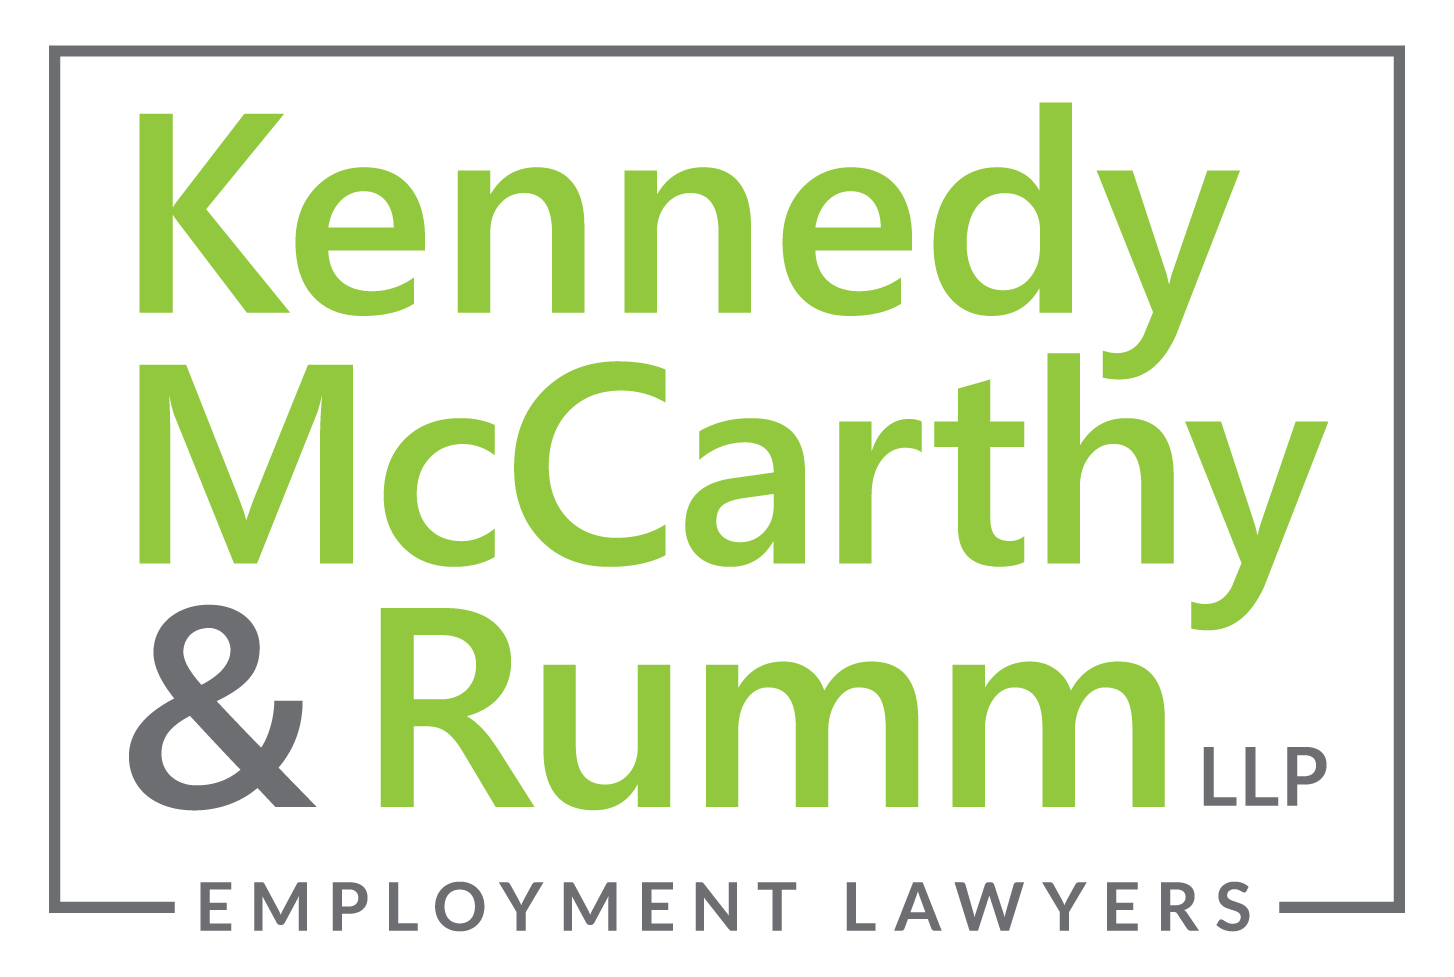 Kennedy McCarthy & Rumm LLP